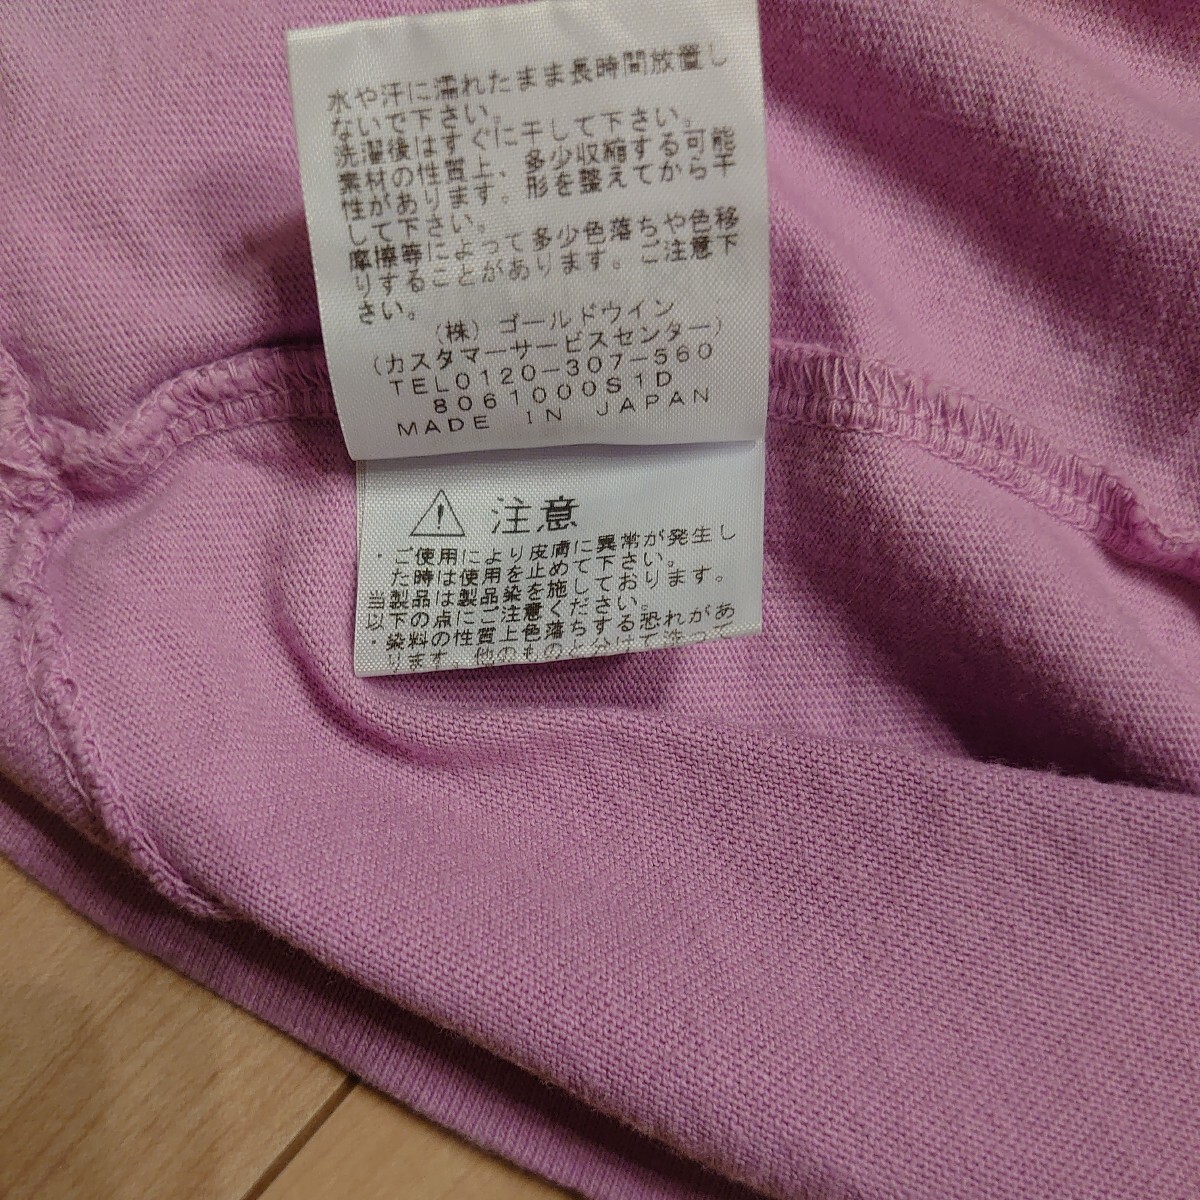 THE NORTH FACE PURPLELABELノースフェイスパープルレーベル NT3802N ポケットロングTシャツ メンズSサイズ ピンクの画像5